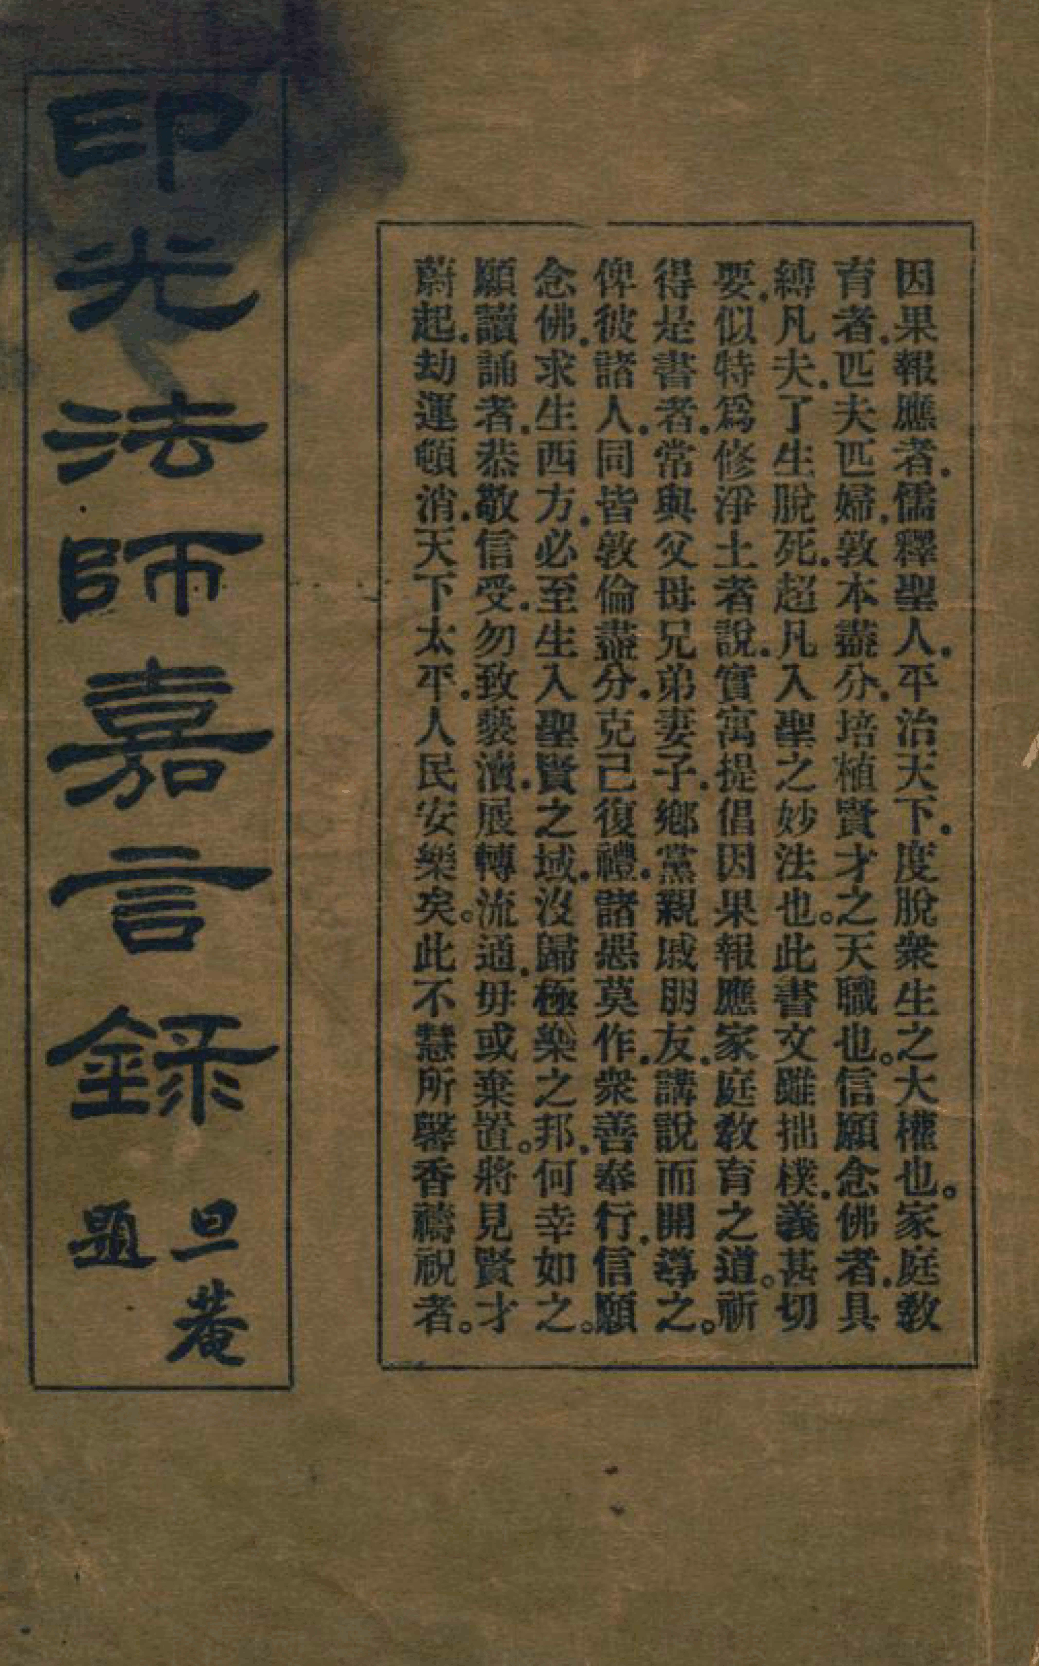 File:Yinguang fashi jiayan lu 1928.png